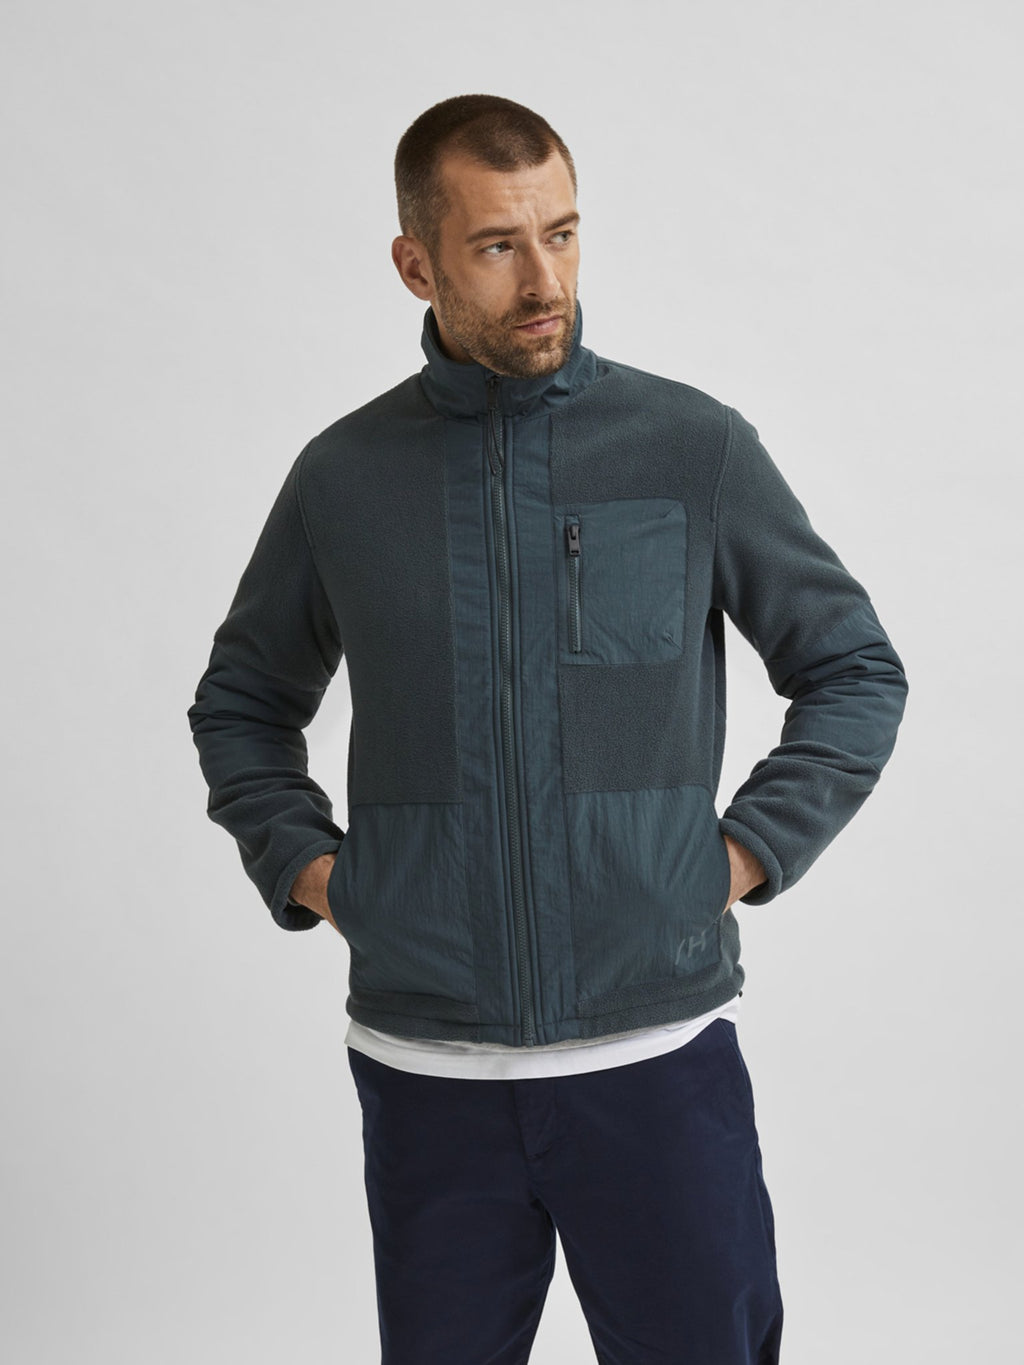 Nohr Fleece Jacket - Urban Chic